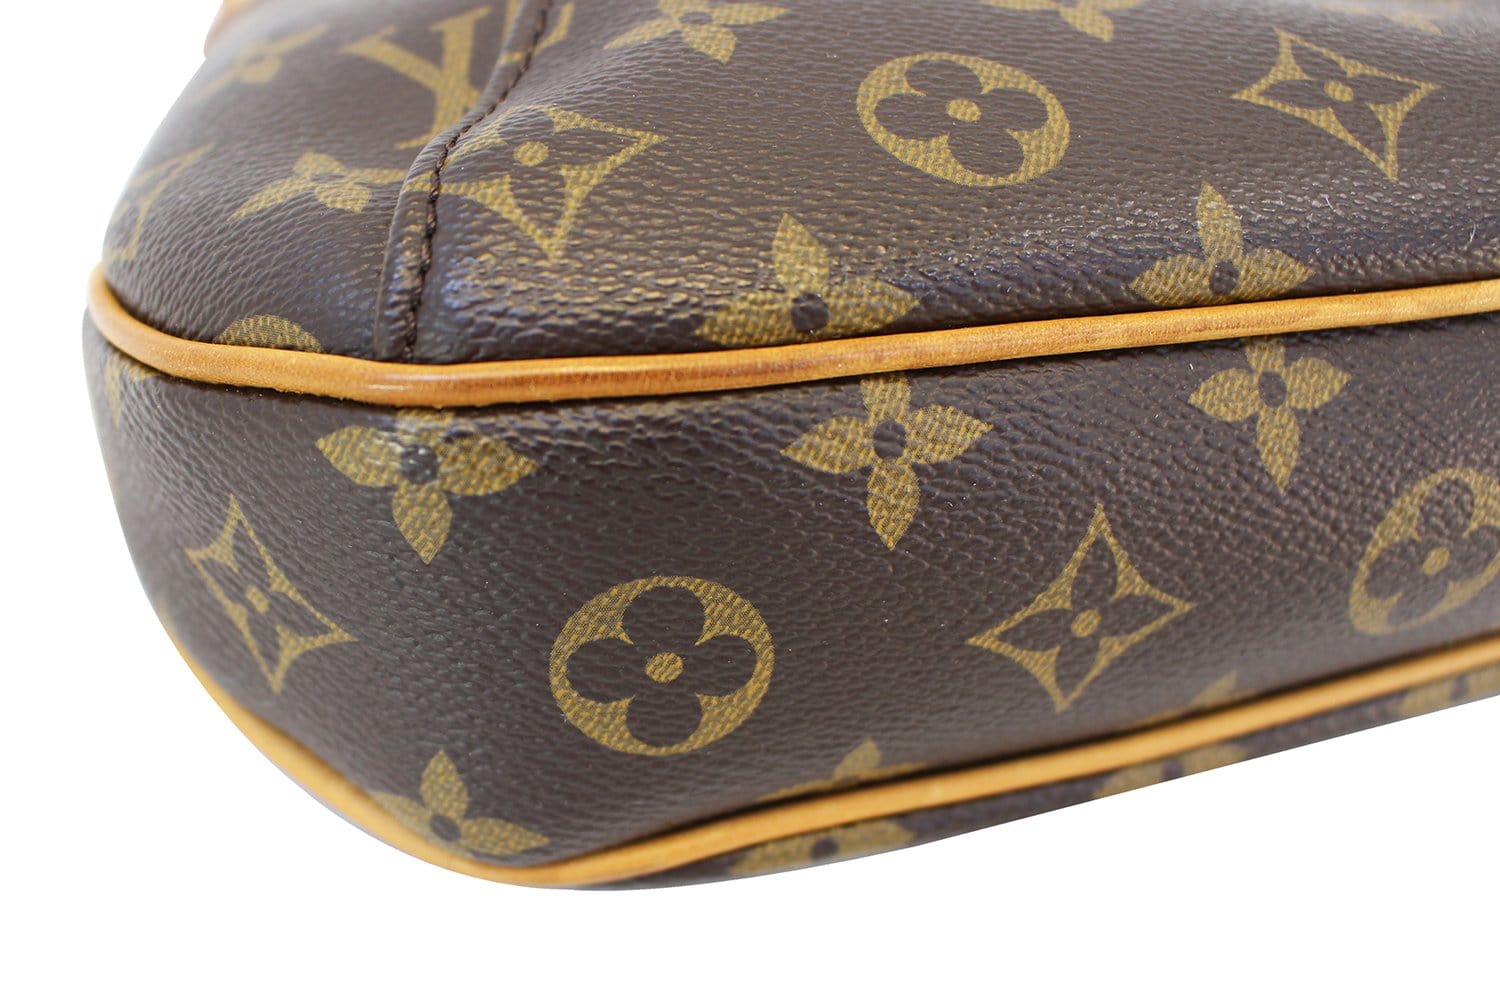 Louis Vuitton 2012 pre-owned Thames PM shoulder bag - ShopStyle